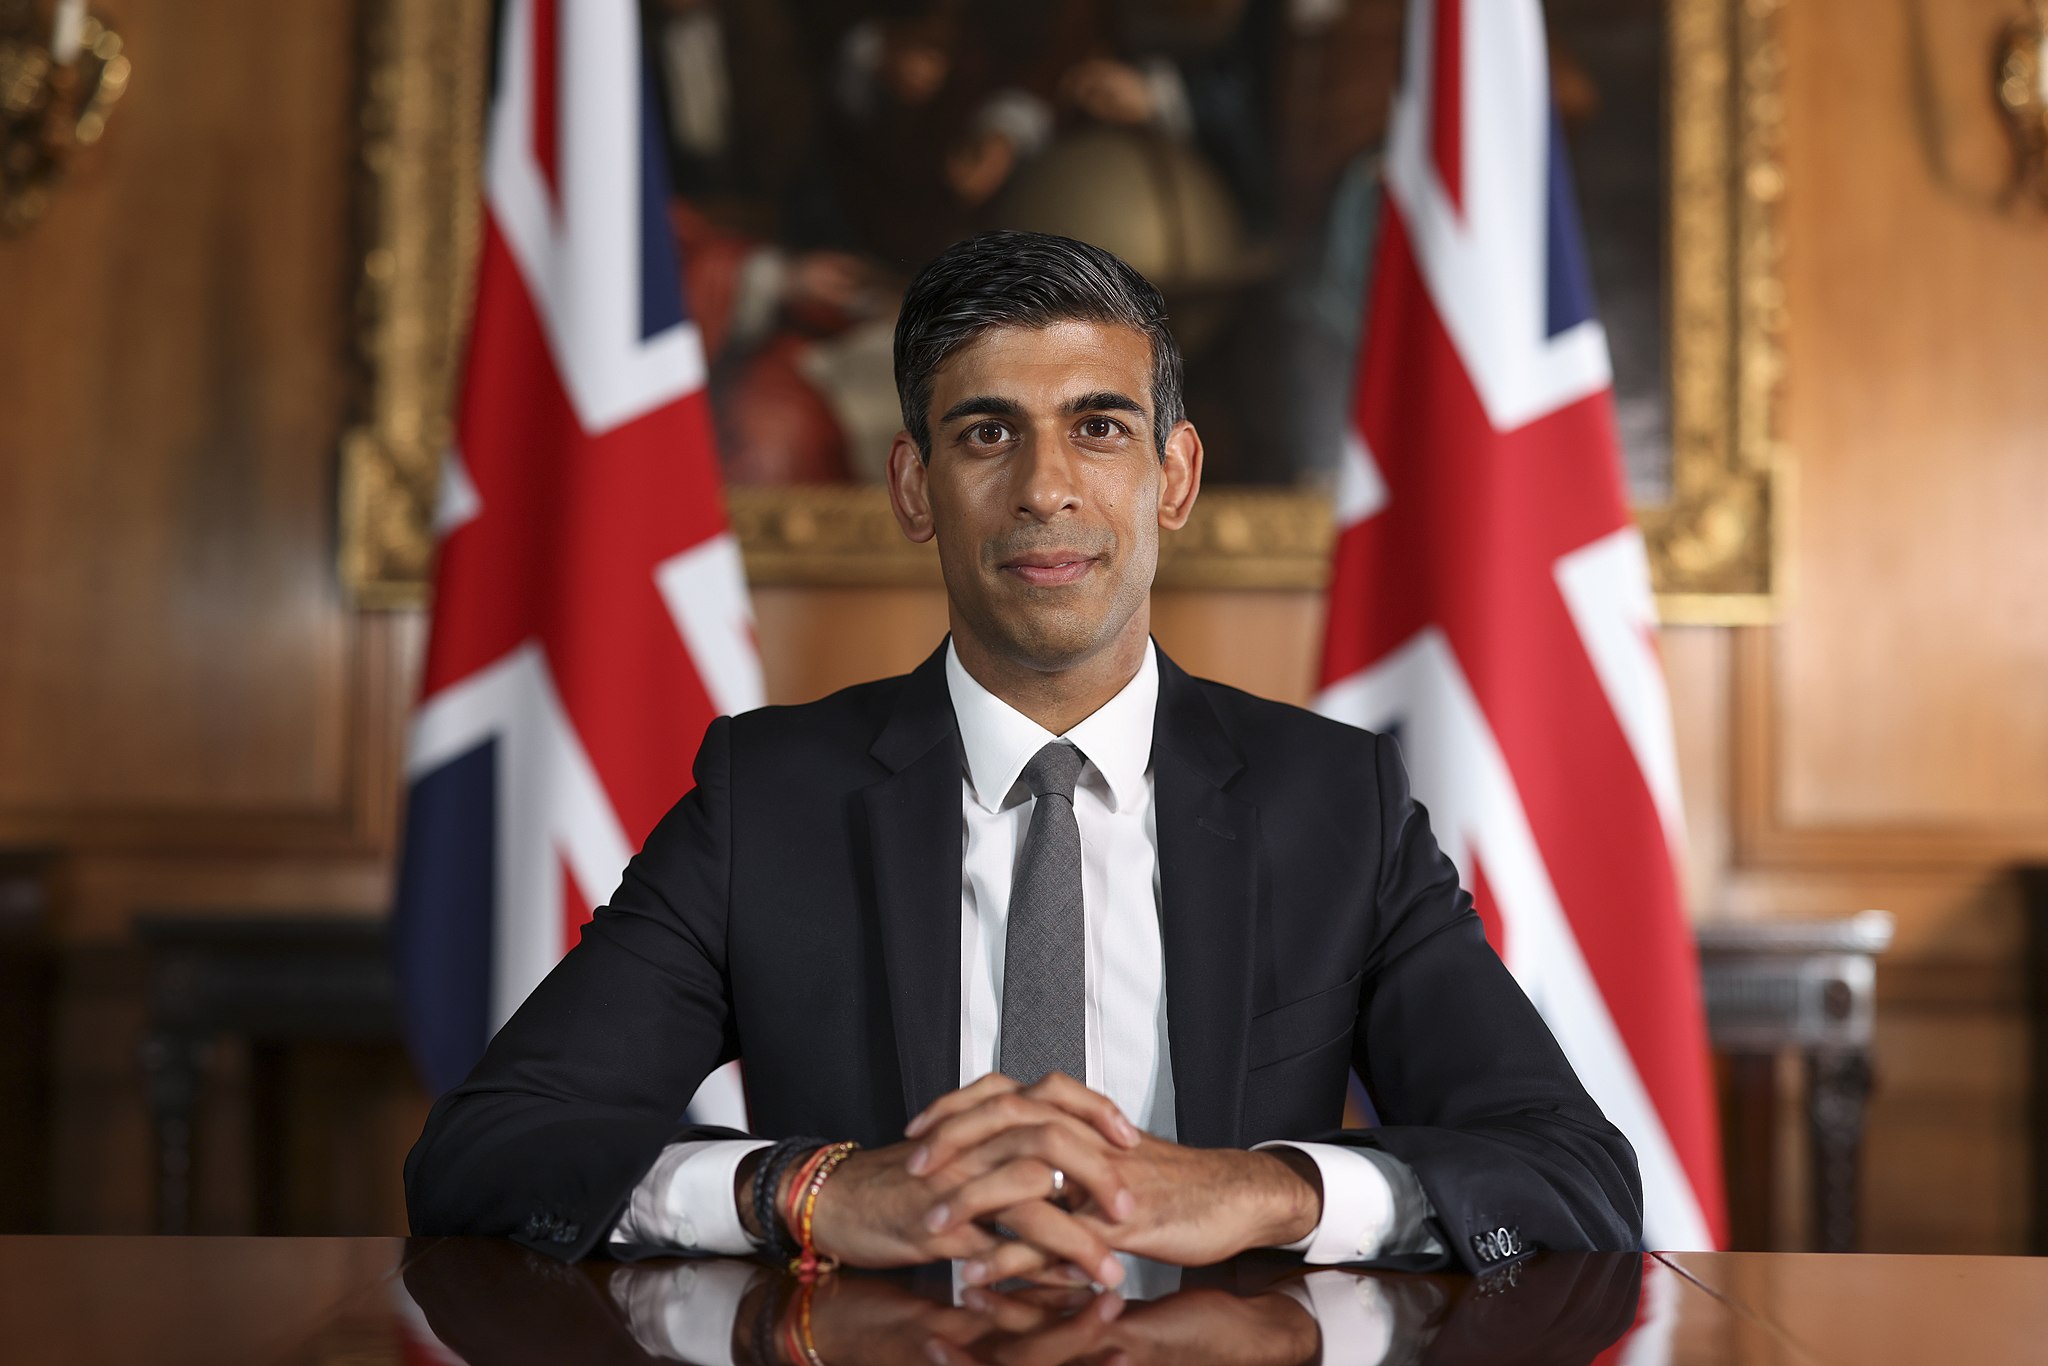 Bild: Simon Dawson / No 10 Downing Street, Rishi Sunak Official Cabinet Portrait, September 2021, CC BY 2.0, via Wikimedia Commons (keine Änderungen vorgenommen)